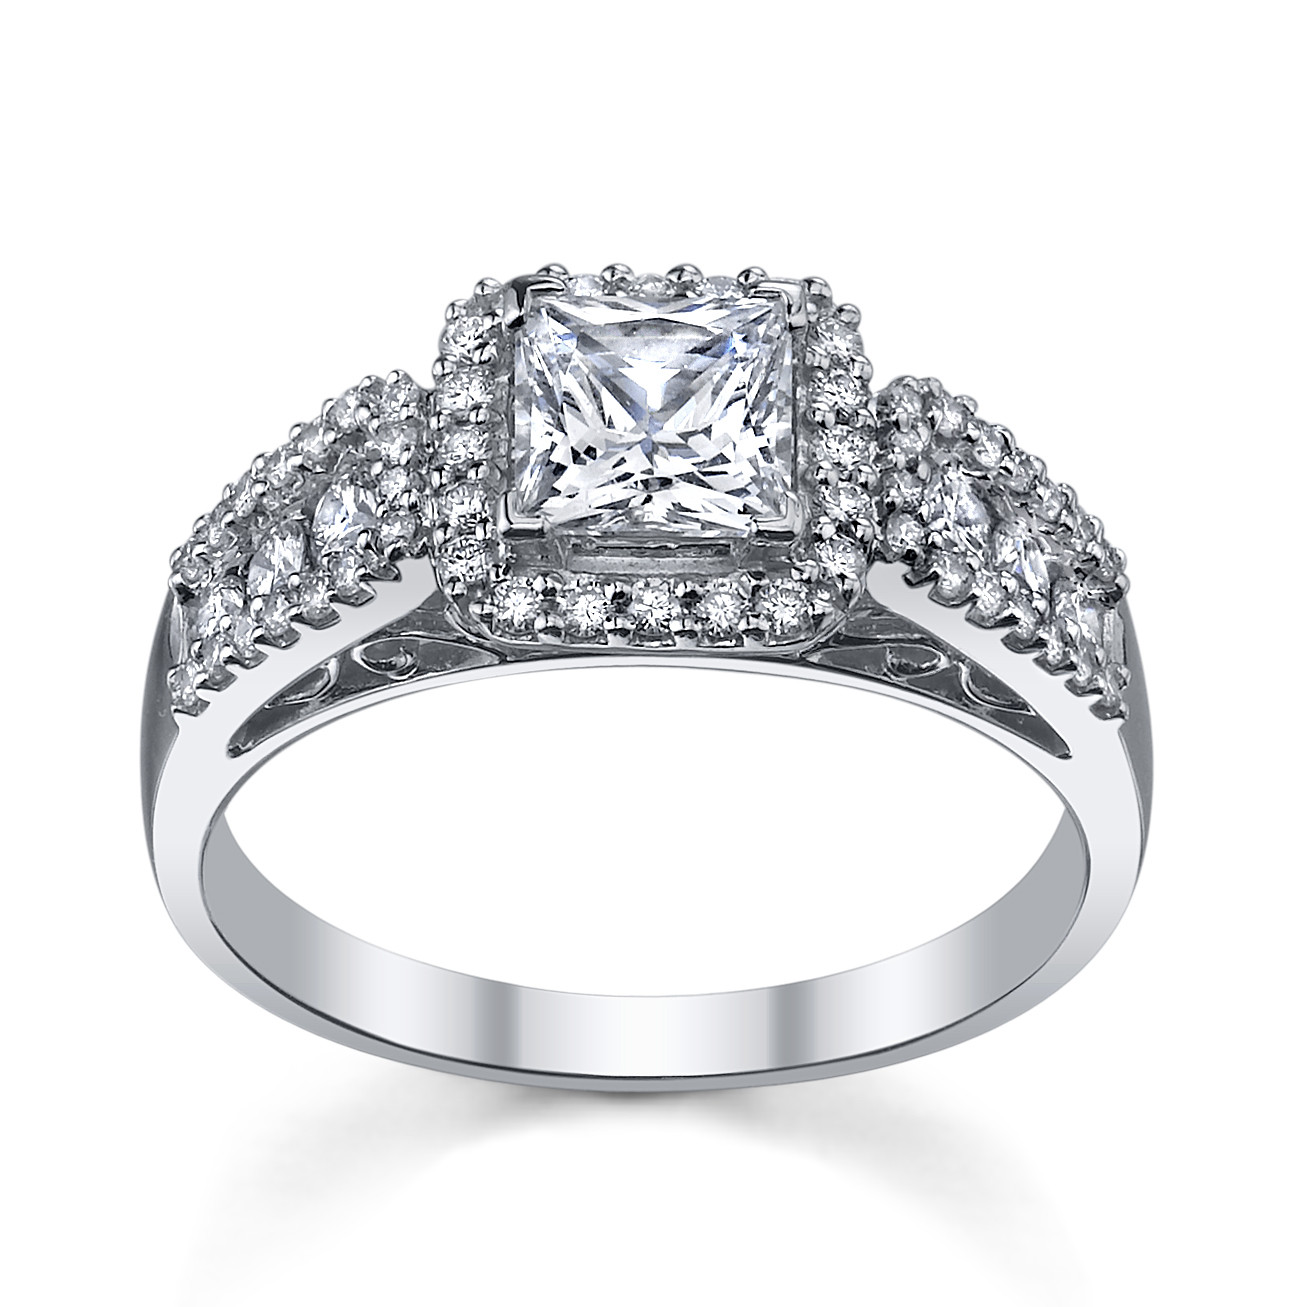 Princess Cut Vintage Engagement Ring
 6 Princess Cut Engagement Rings She ll Love Robbins